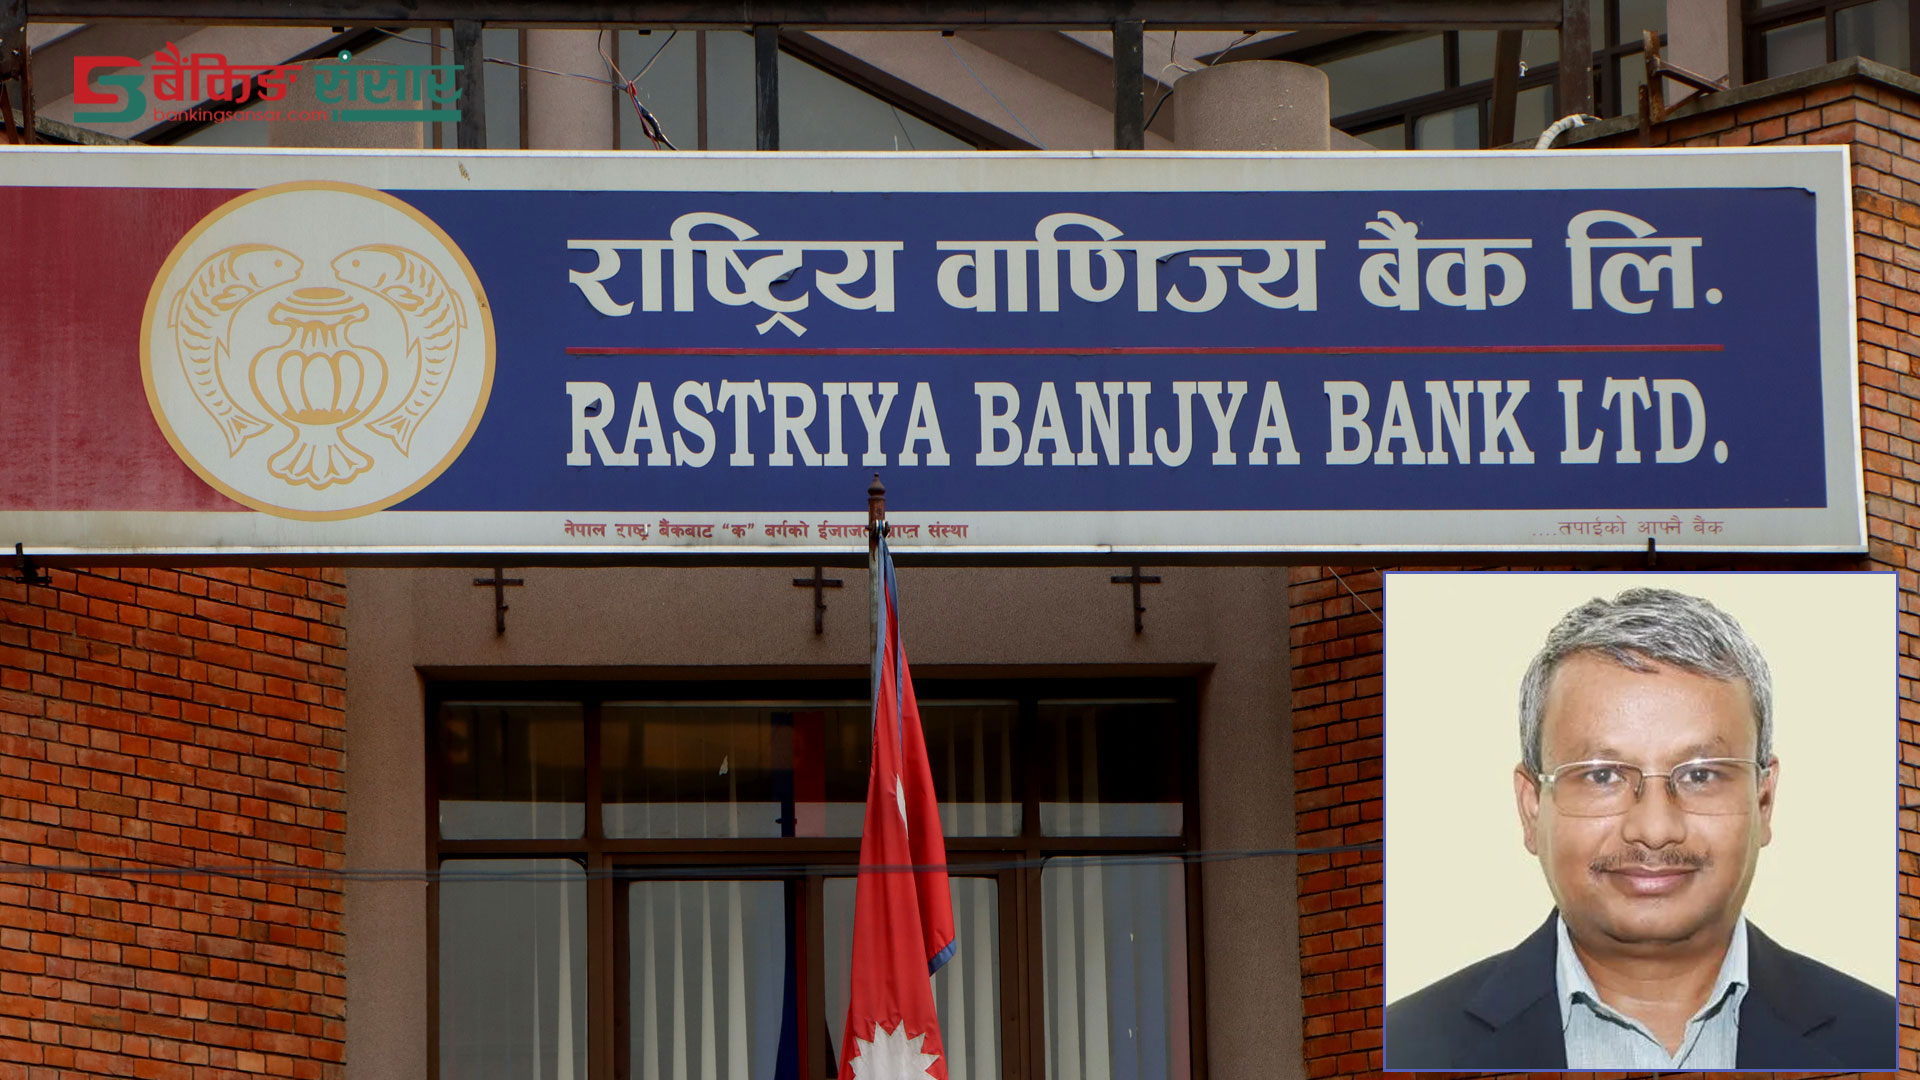 राष्ट्रिय वाणिज्य बैंकको उप कार्यकारी अधिकृतमा राम कुमार थापा नियुक्त